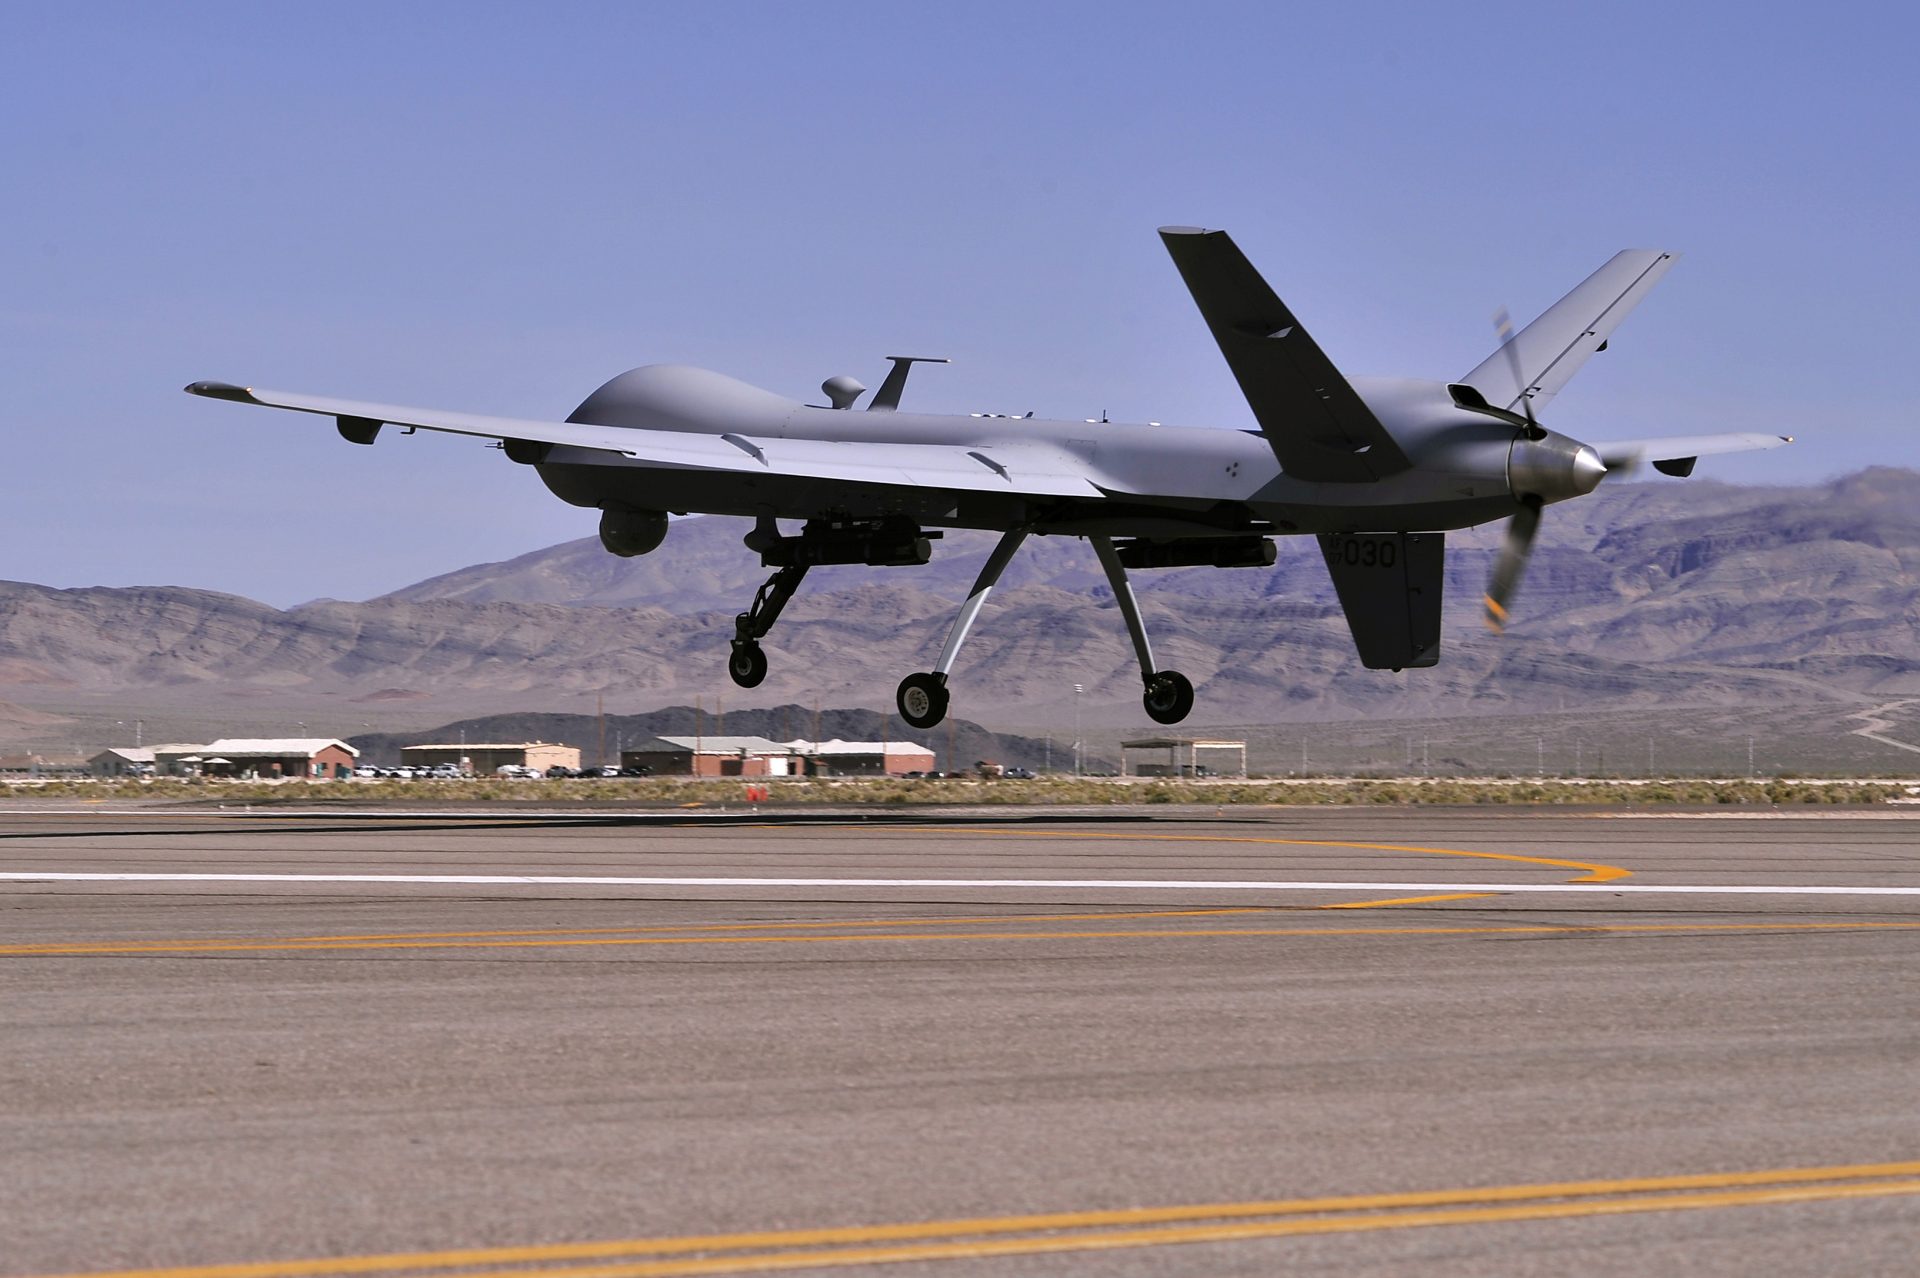 Imagen facilitada por la Fuerza Aérea de EE.UU. que muestra un dron "Reaper MQ-9", en una base estadounidense.